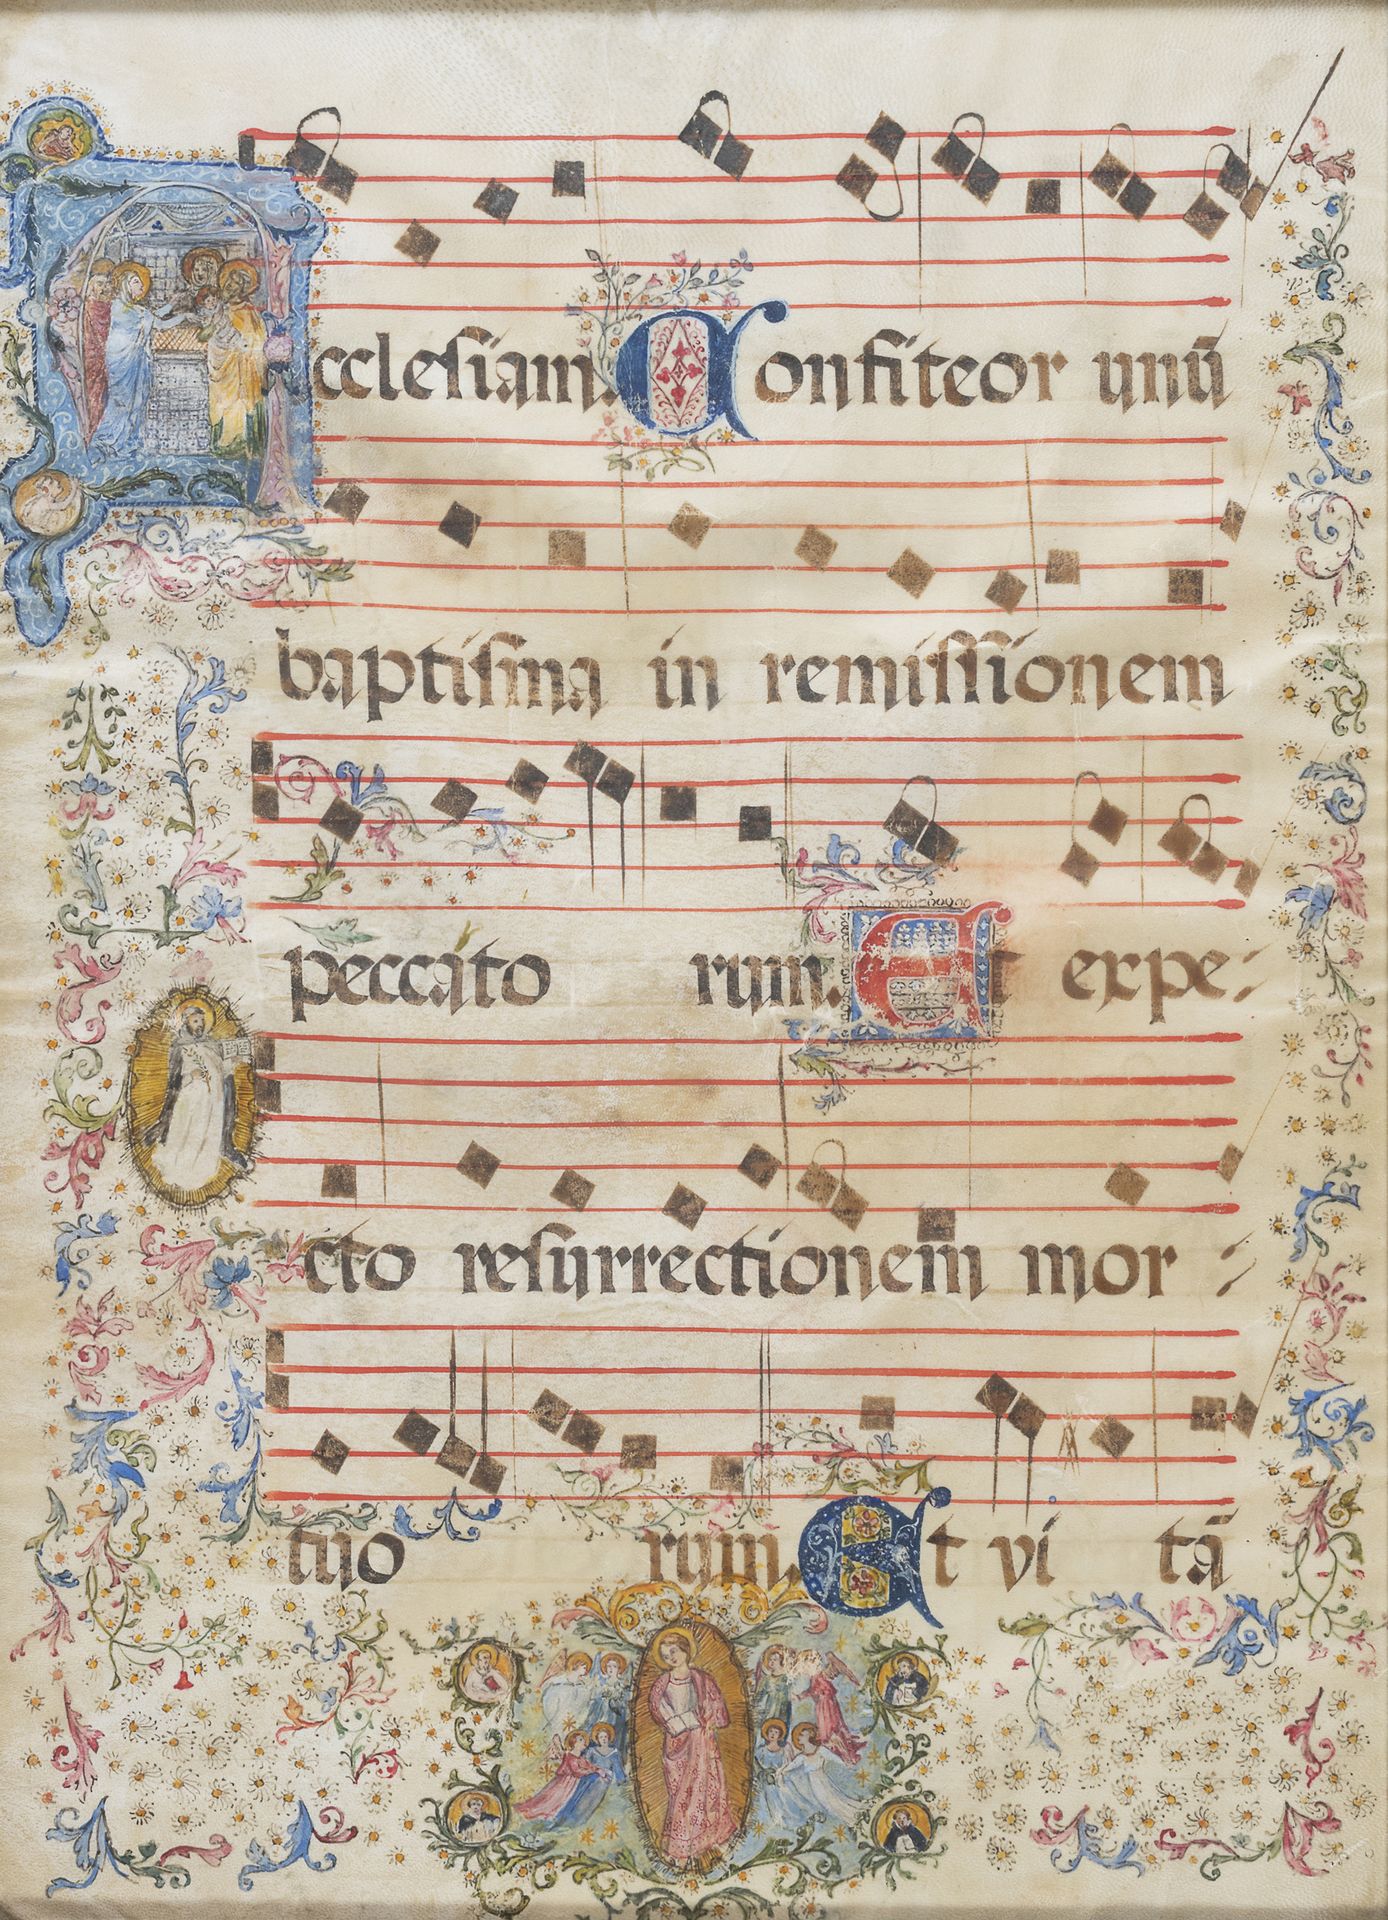 Null 照明的羊皮纸，十七世纪

带乐谱，章节上装饰有《旧约》的图案。

尺寸为52 x 36厘米。

有框。